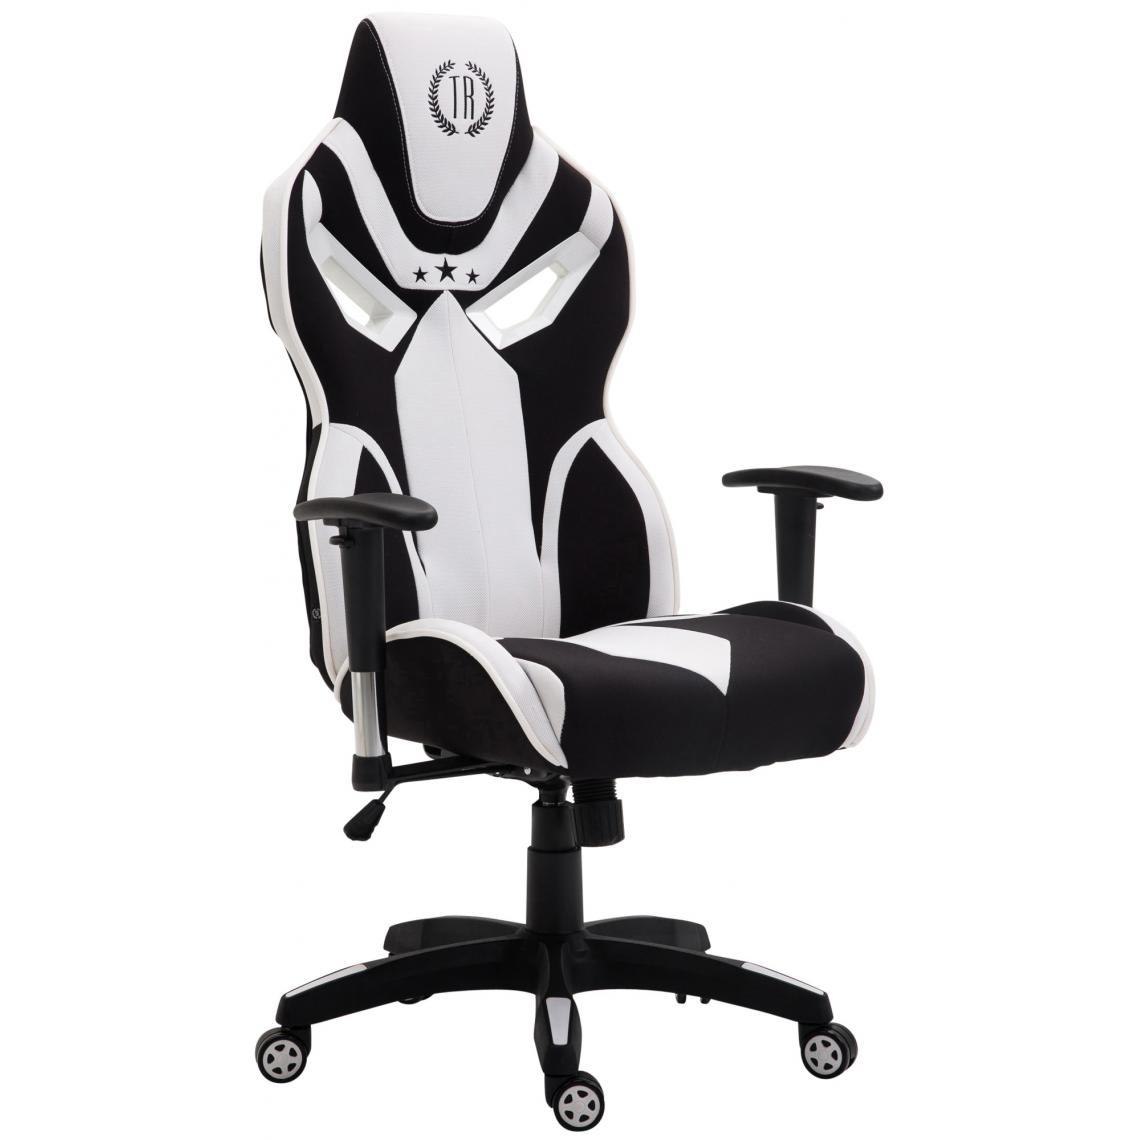 Icaverne - sublime Chaise de bureau categorie Luanda Fangio tissu couleur noir et blanc - Chaises